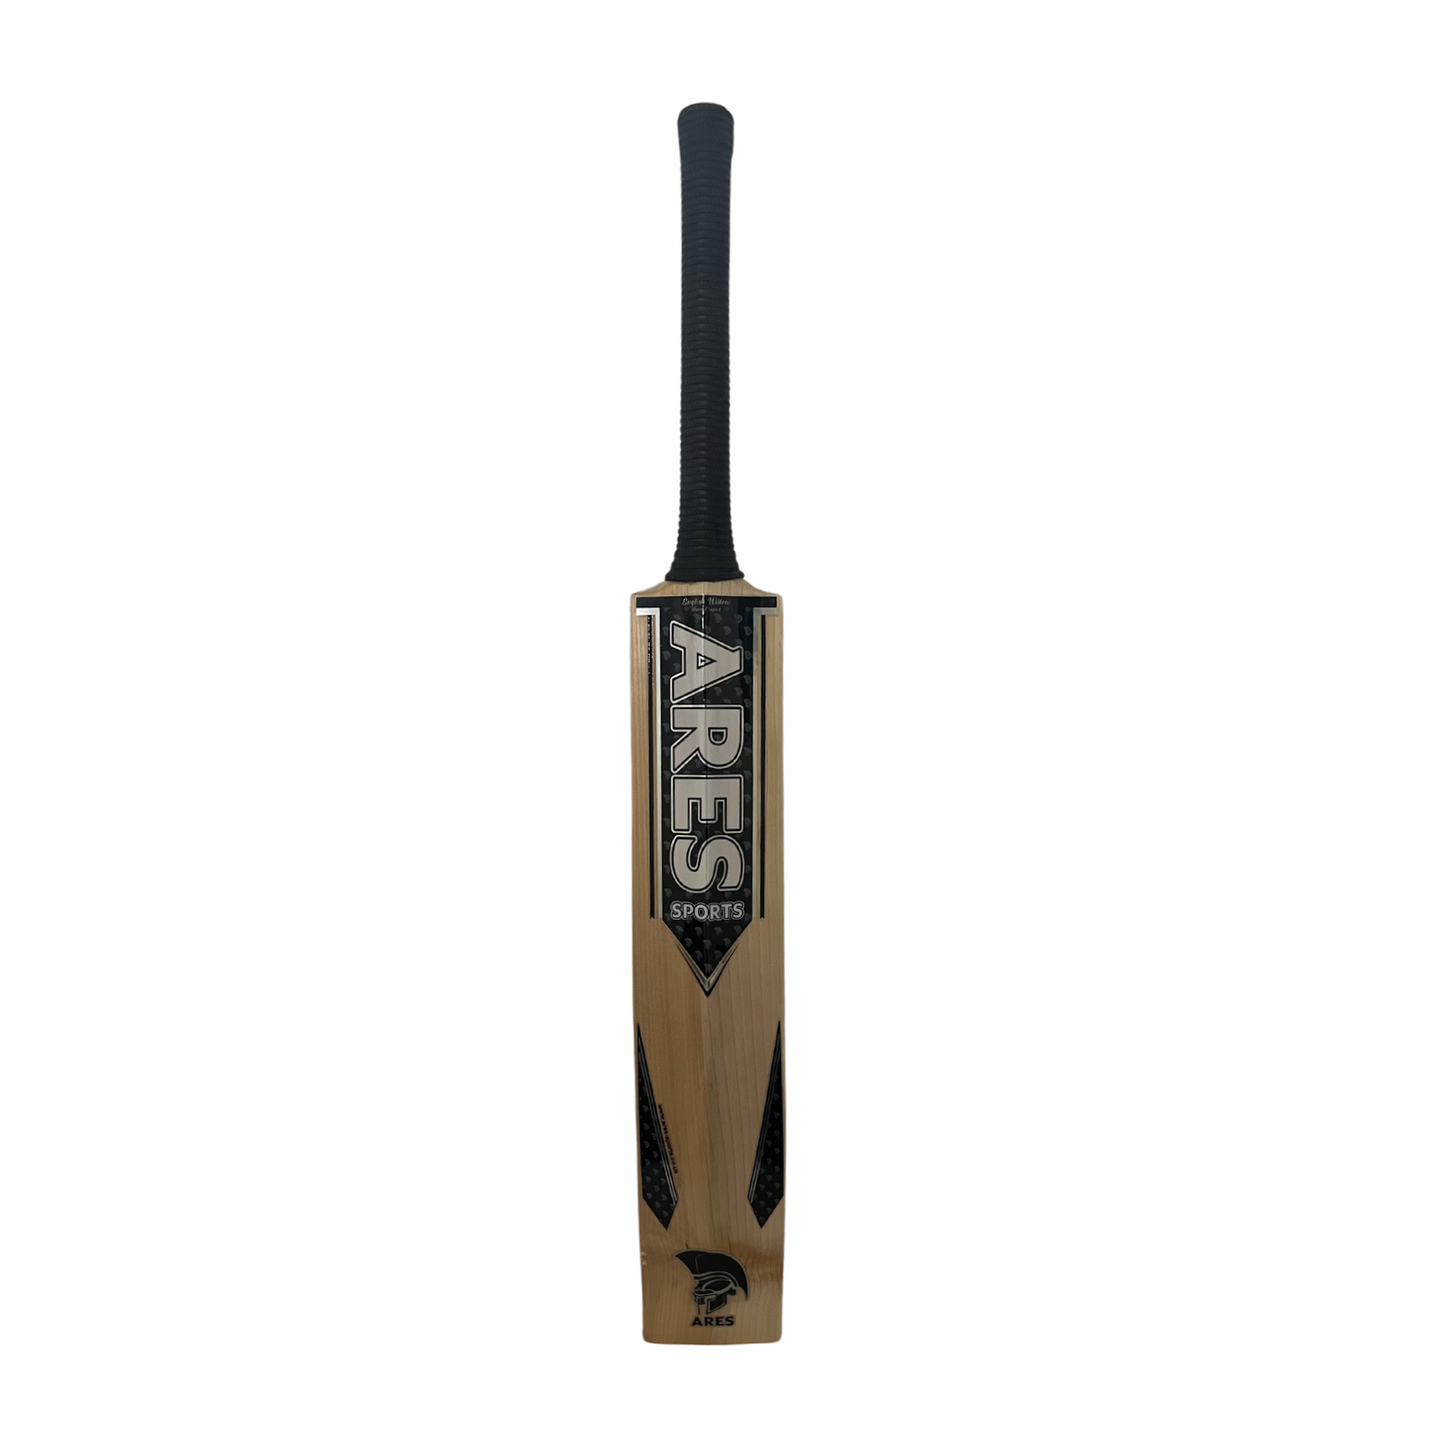 Ares Zeus Edition Cricket Bat - Junior Size Harrow (A)